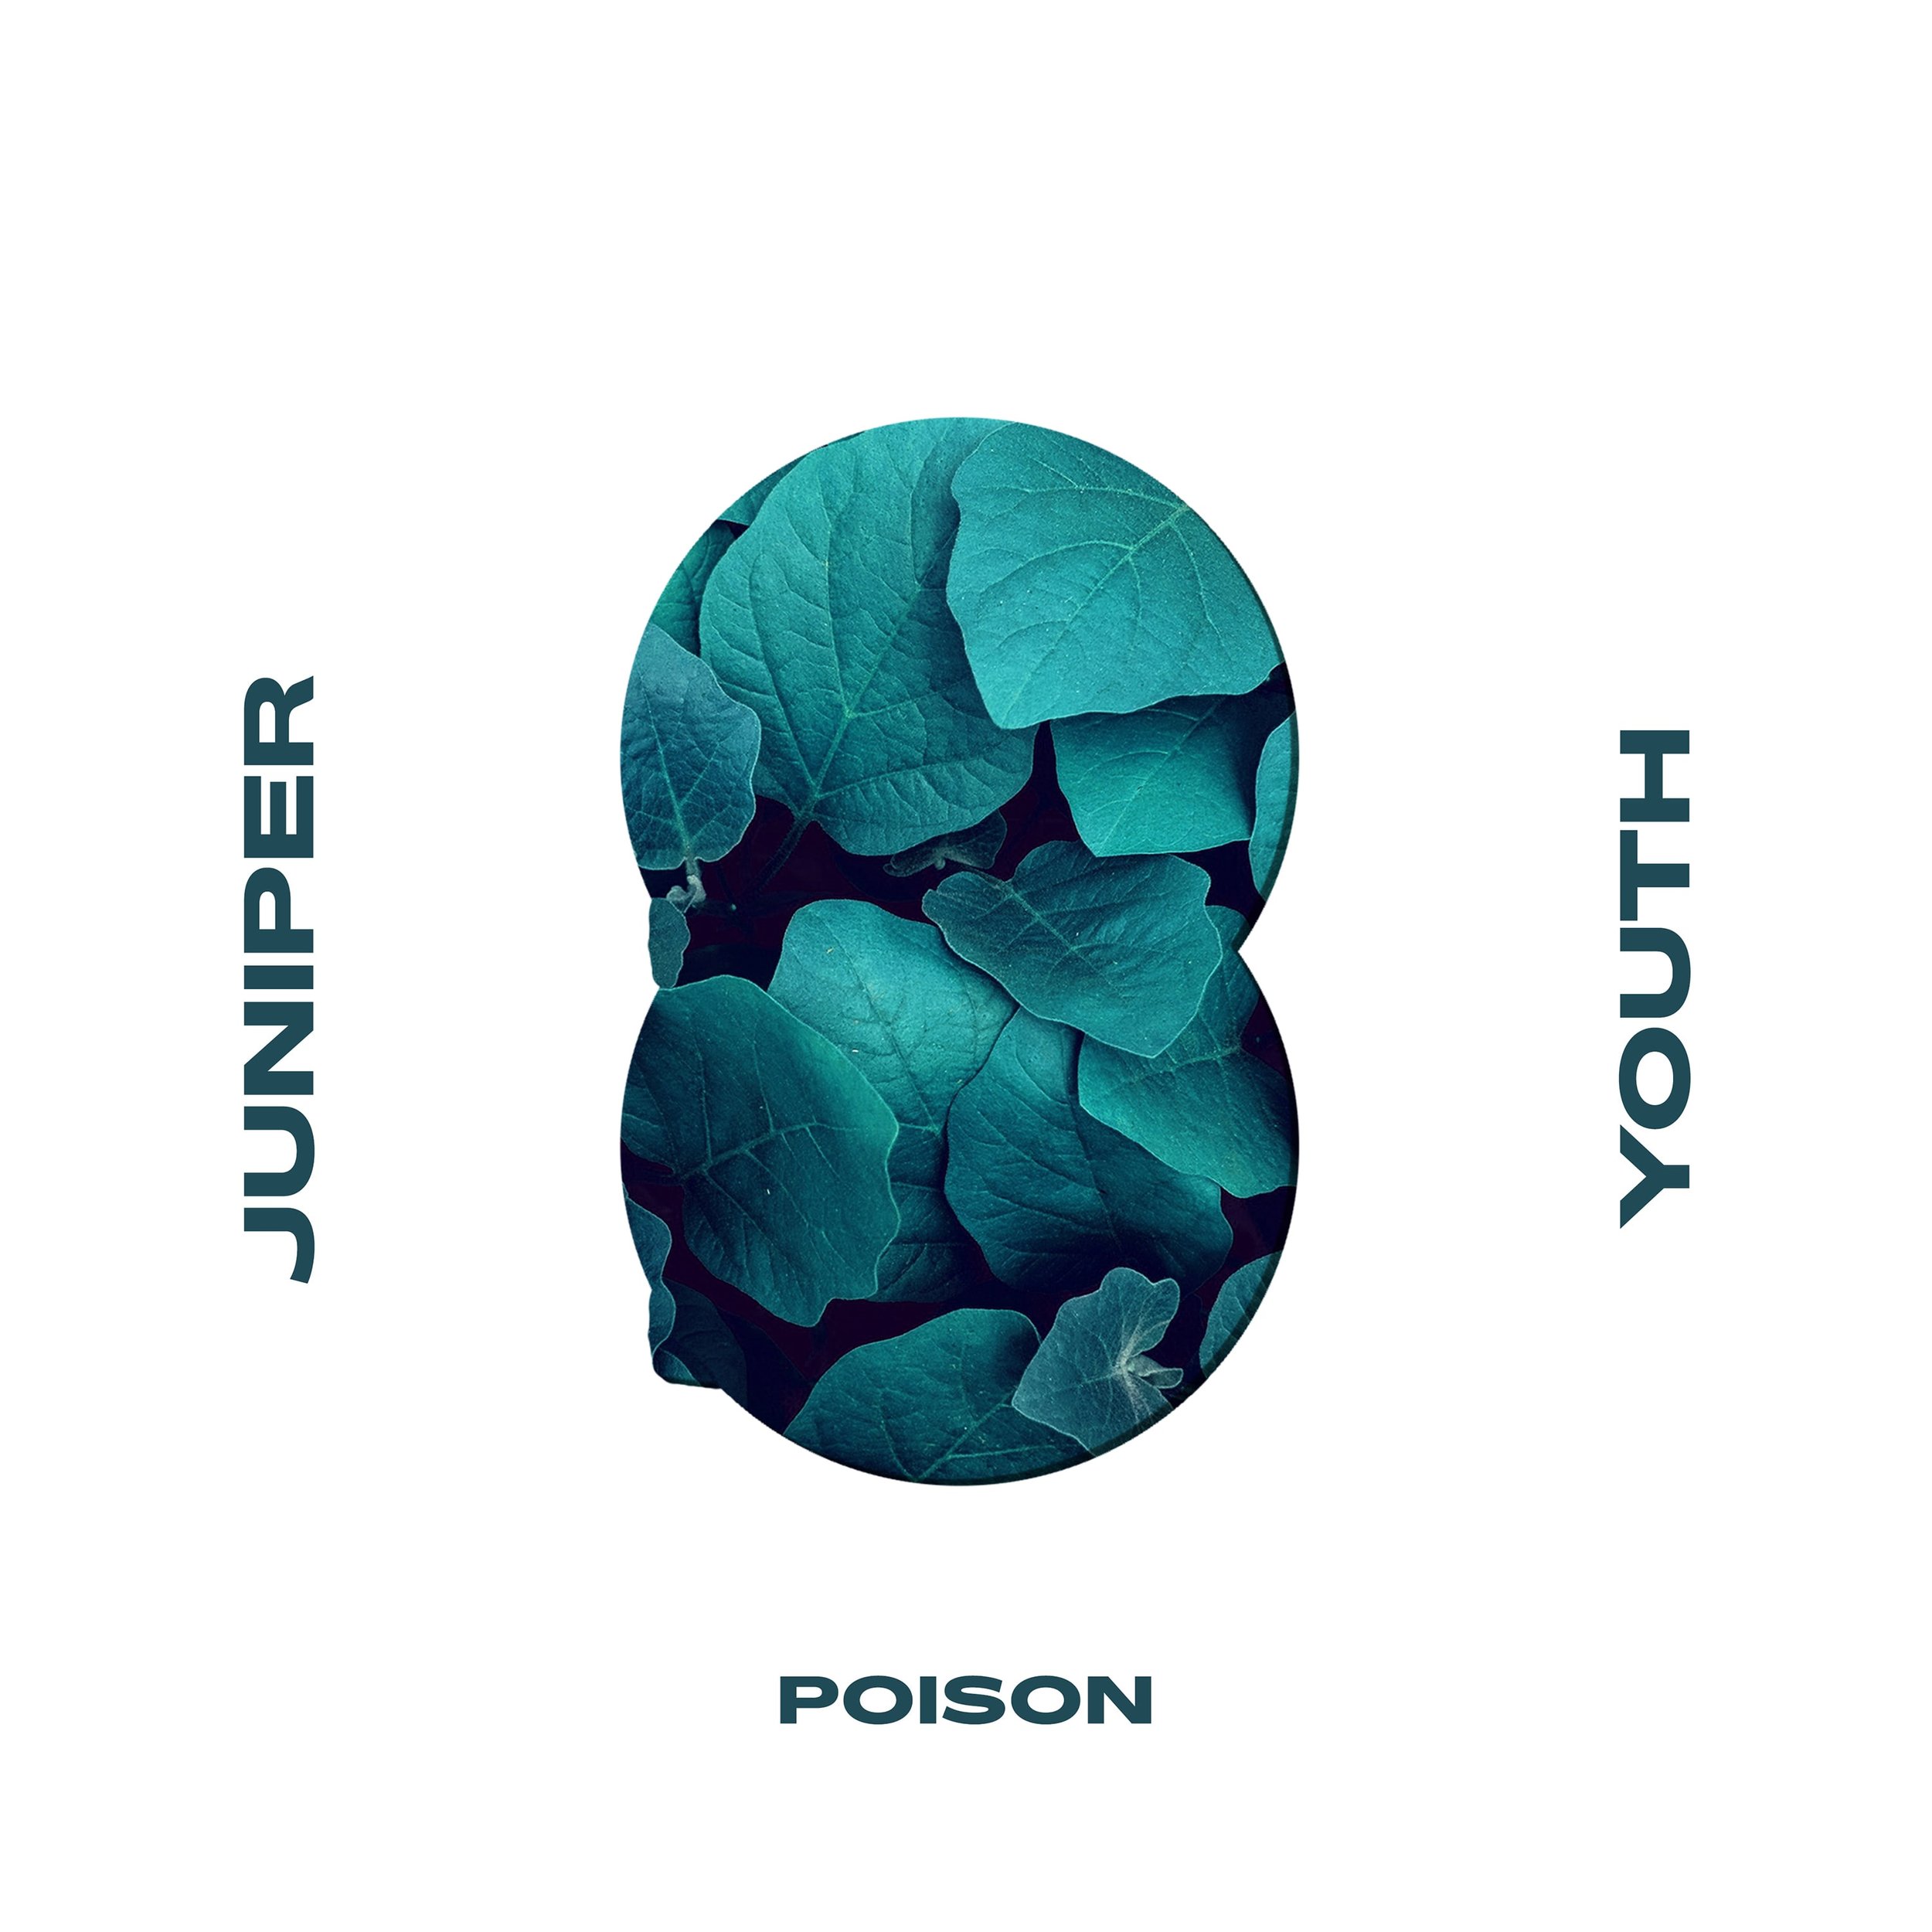 juniper youth - poison - cover.jpg